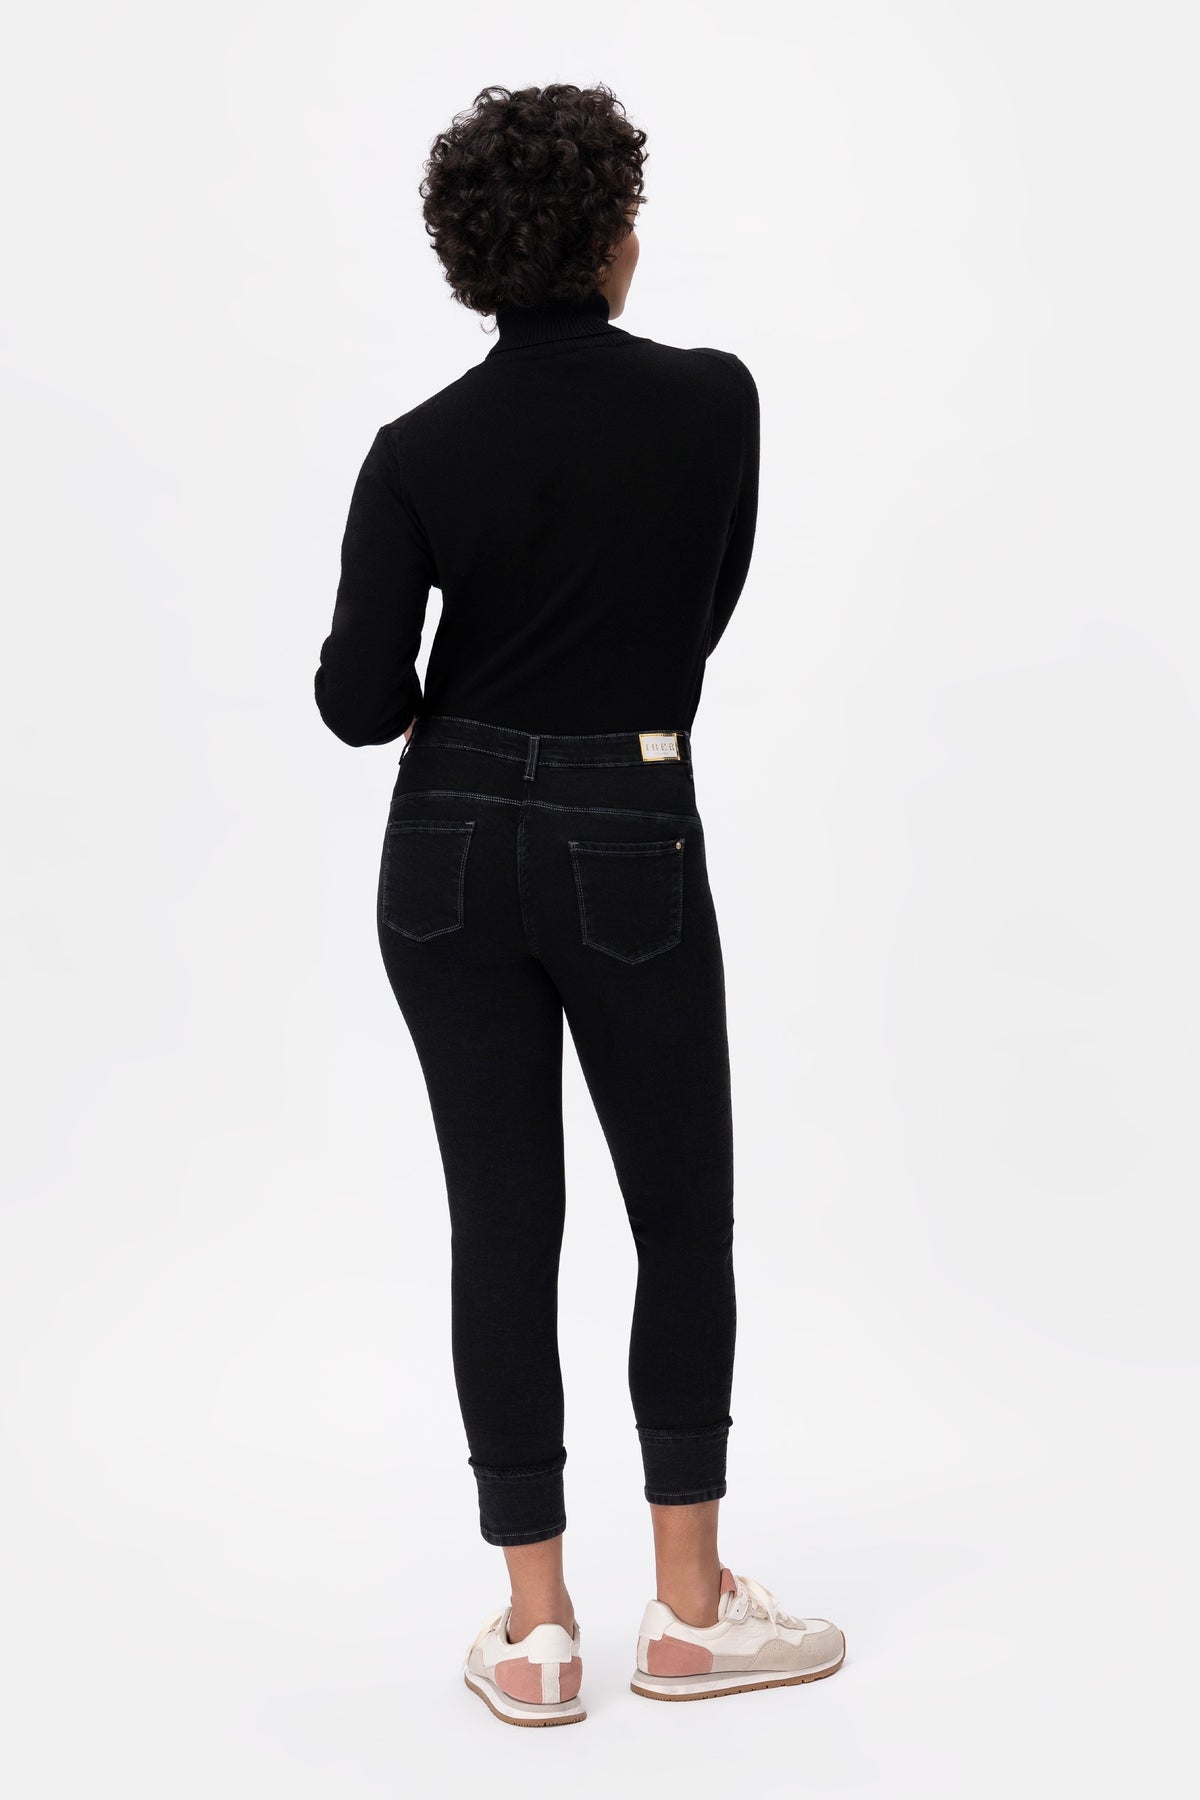 Joana Grn02/s Jeans nero con risvolto